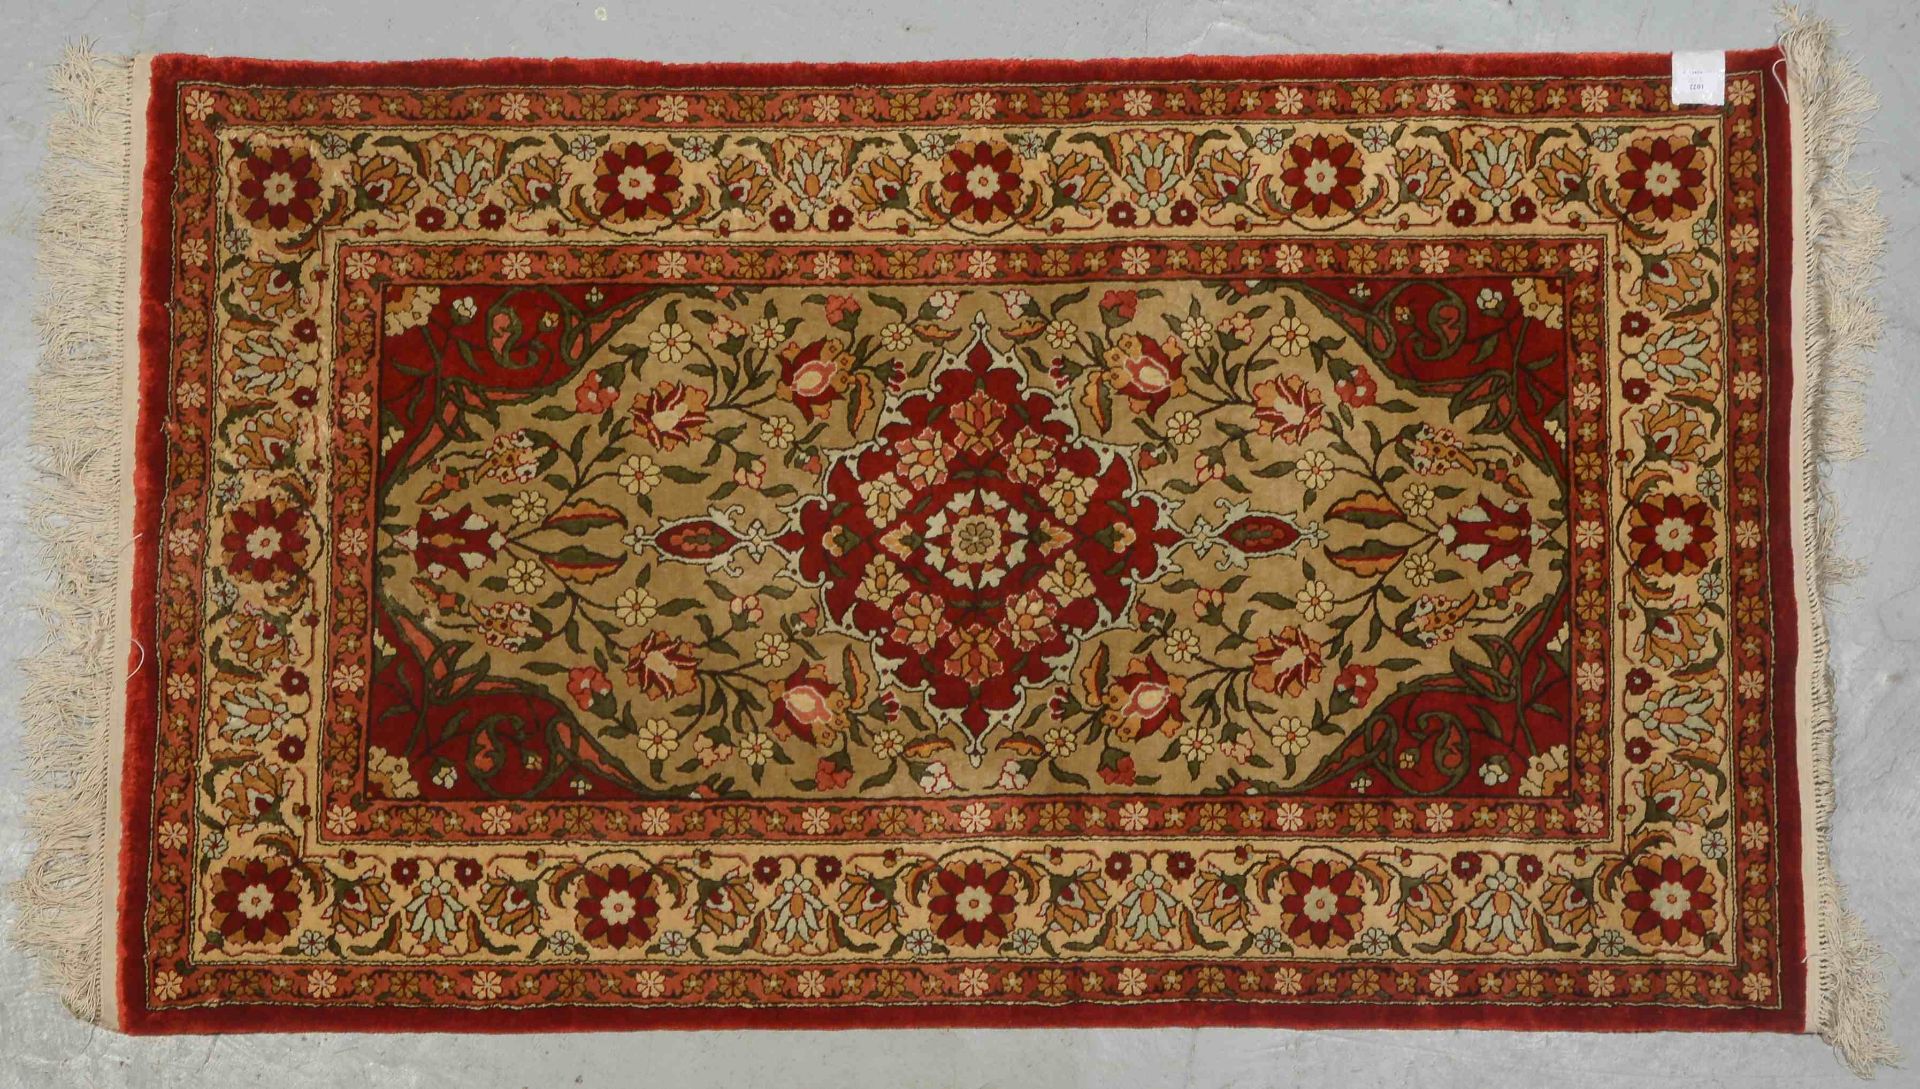 Orientteppich (China), Seide auf Seide, feine Knüpfung, hellgrundig, Flor in gutem Zustand; Maße 160